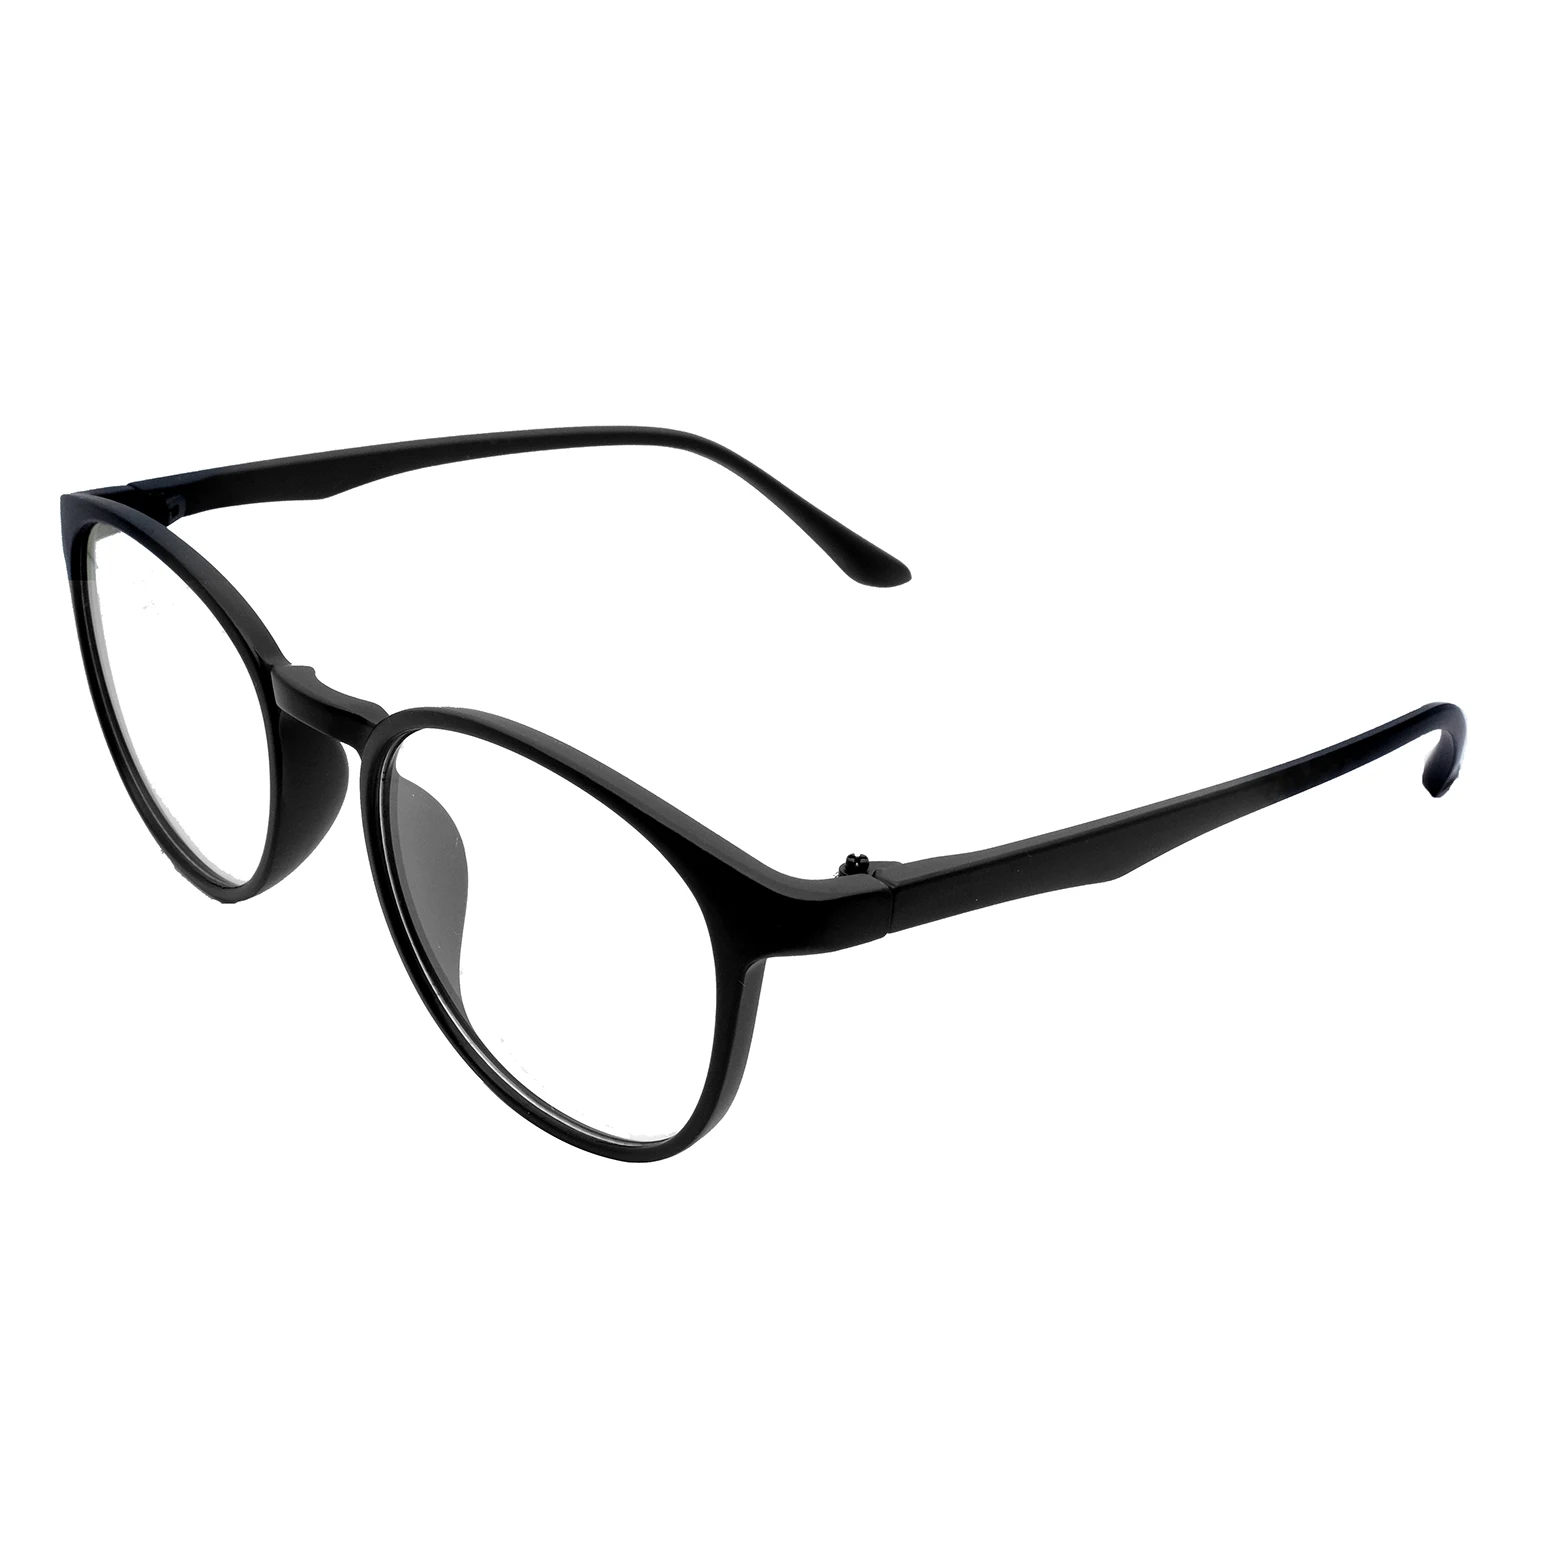 Дистанция близорукость большие очки-0,25 до-6,0 черные оправы женские близорукие очки модные близорукие очки